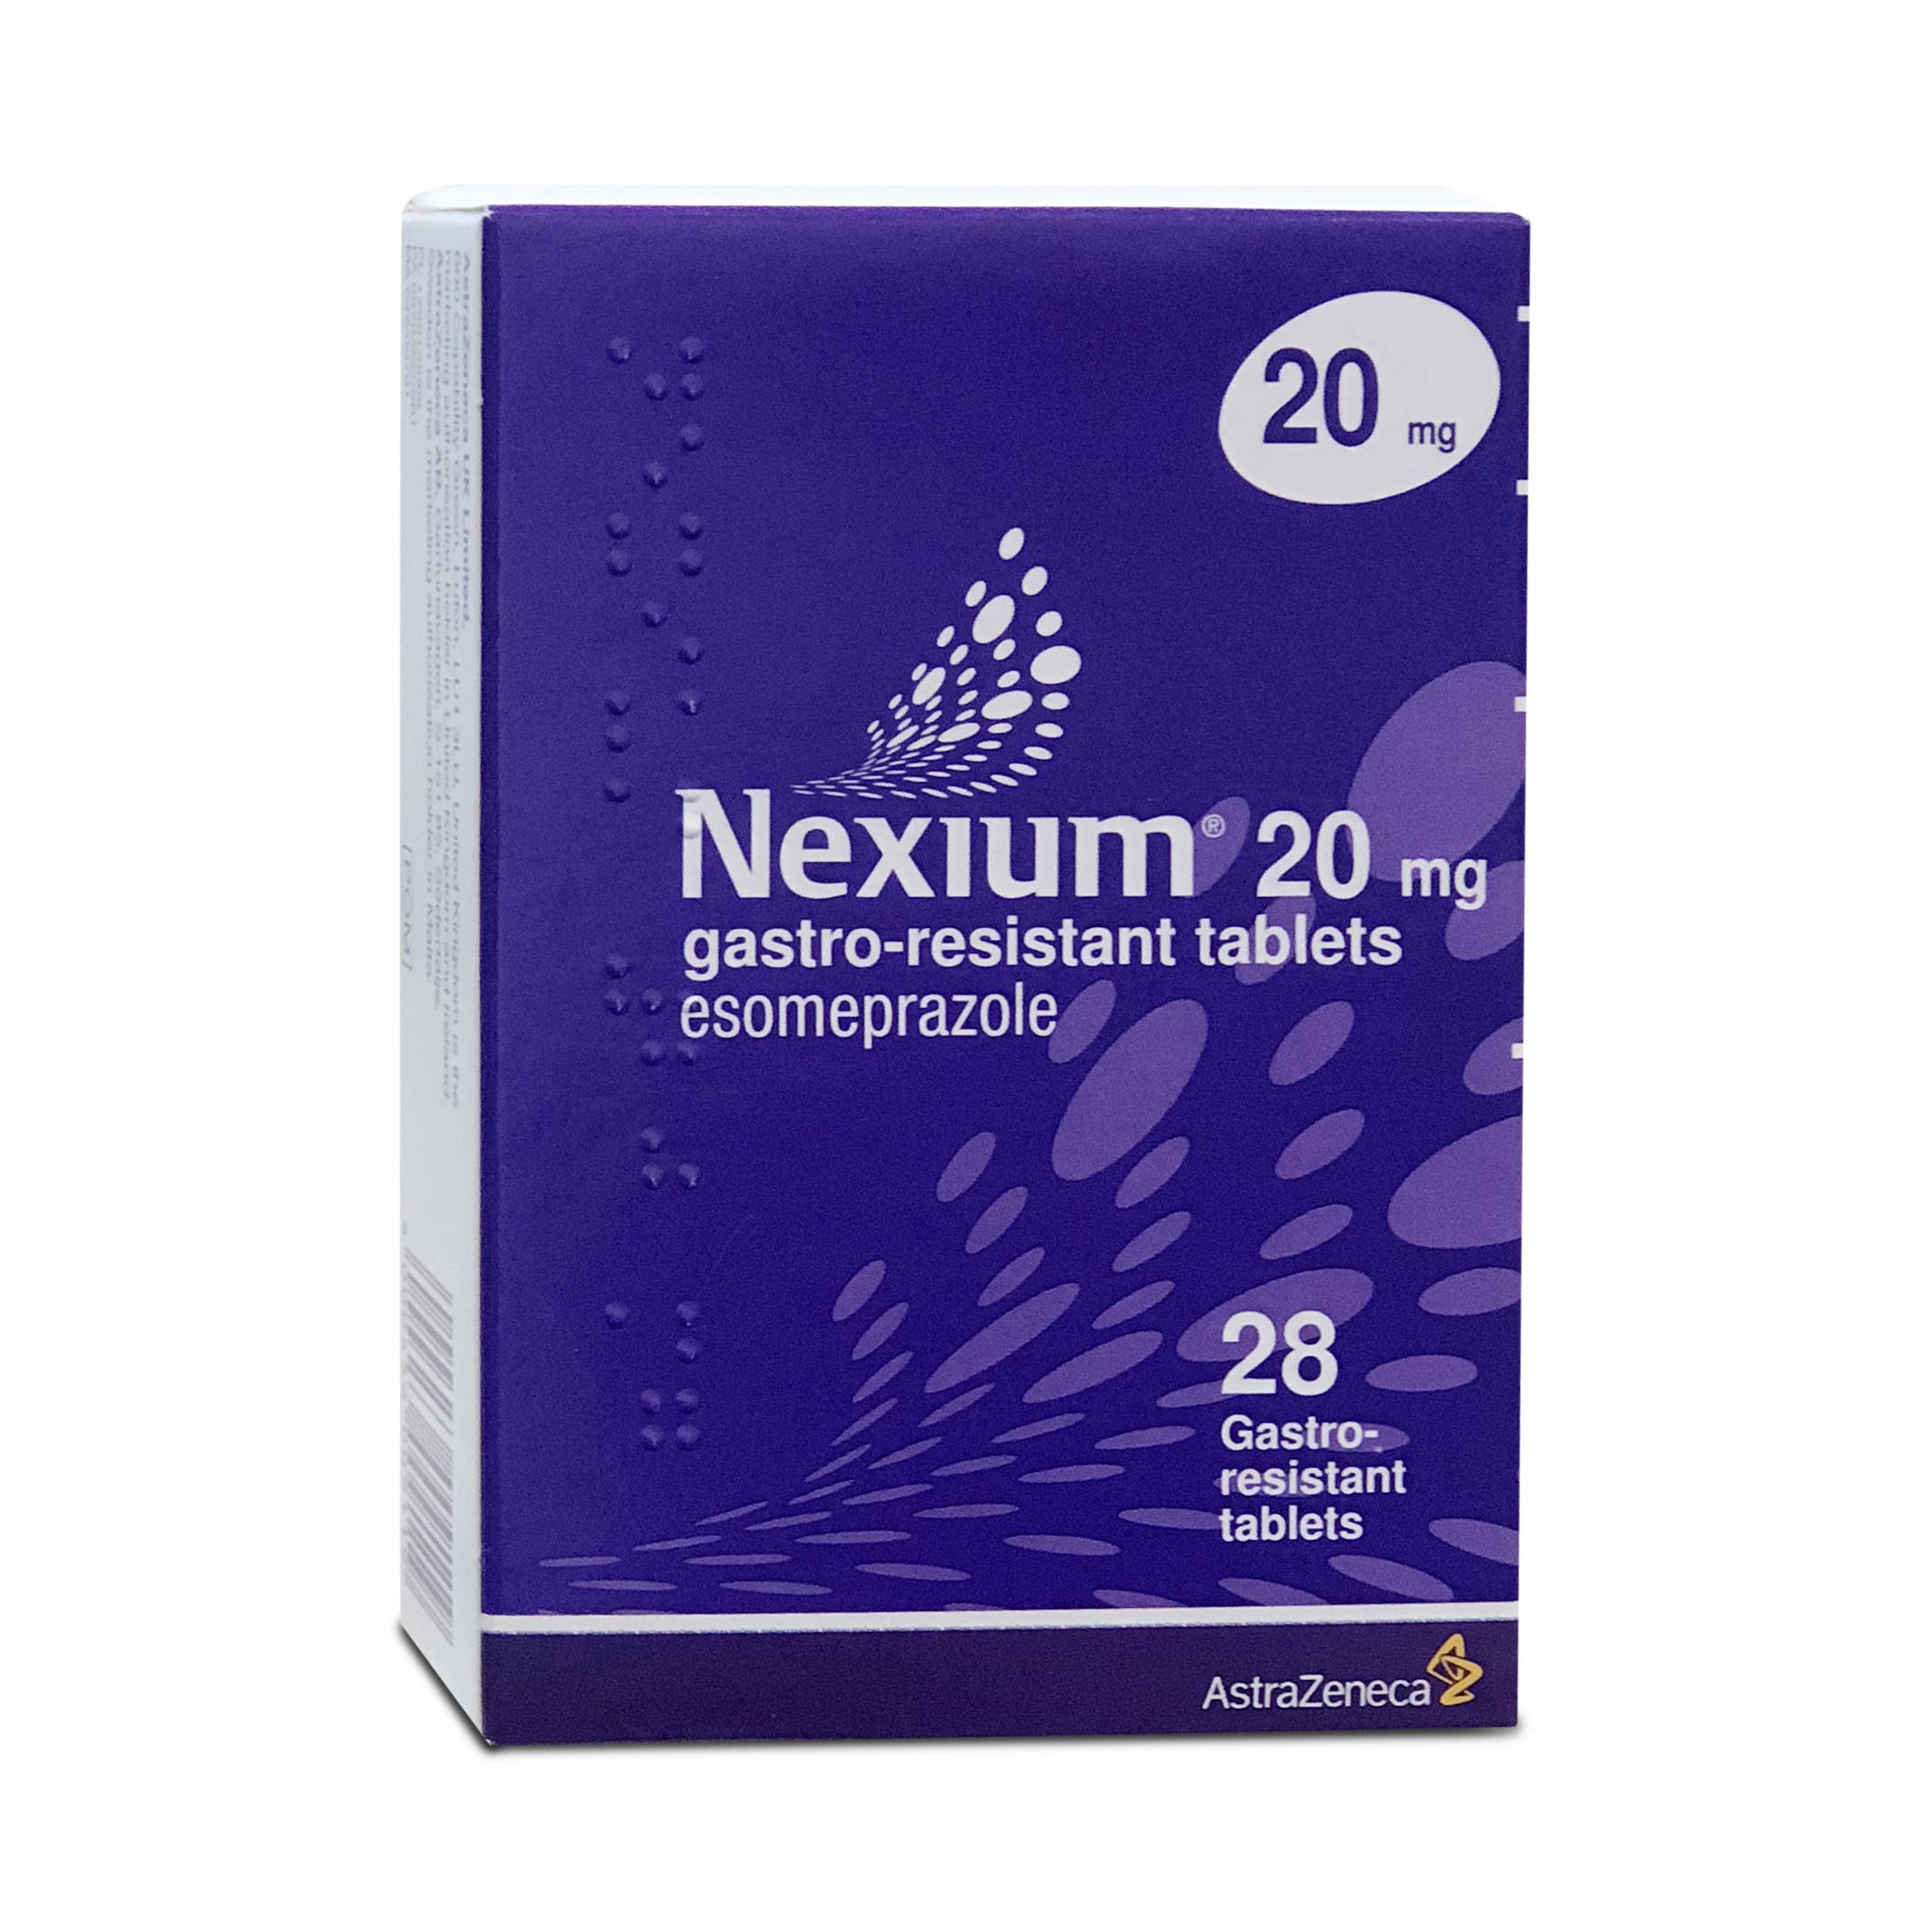 Nexium 20mg AstraZeneca Purple Box